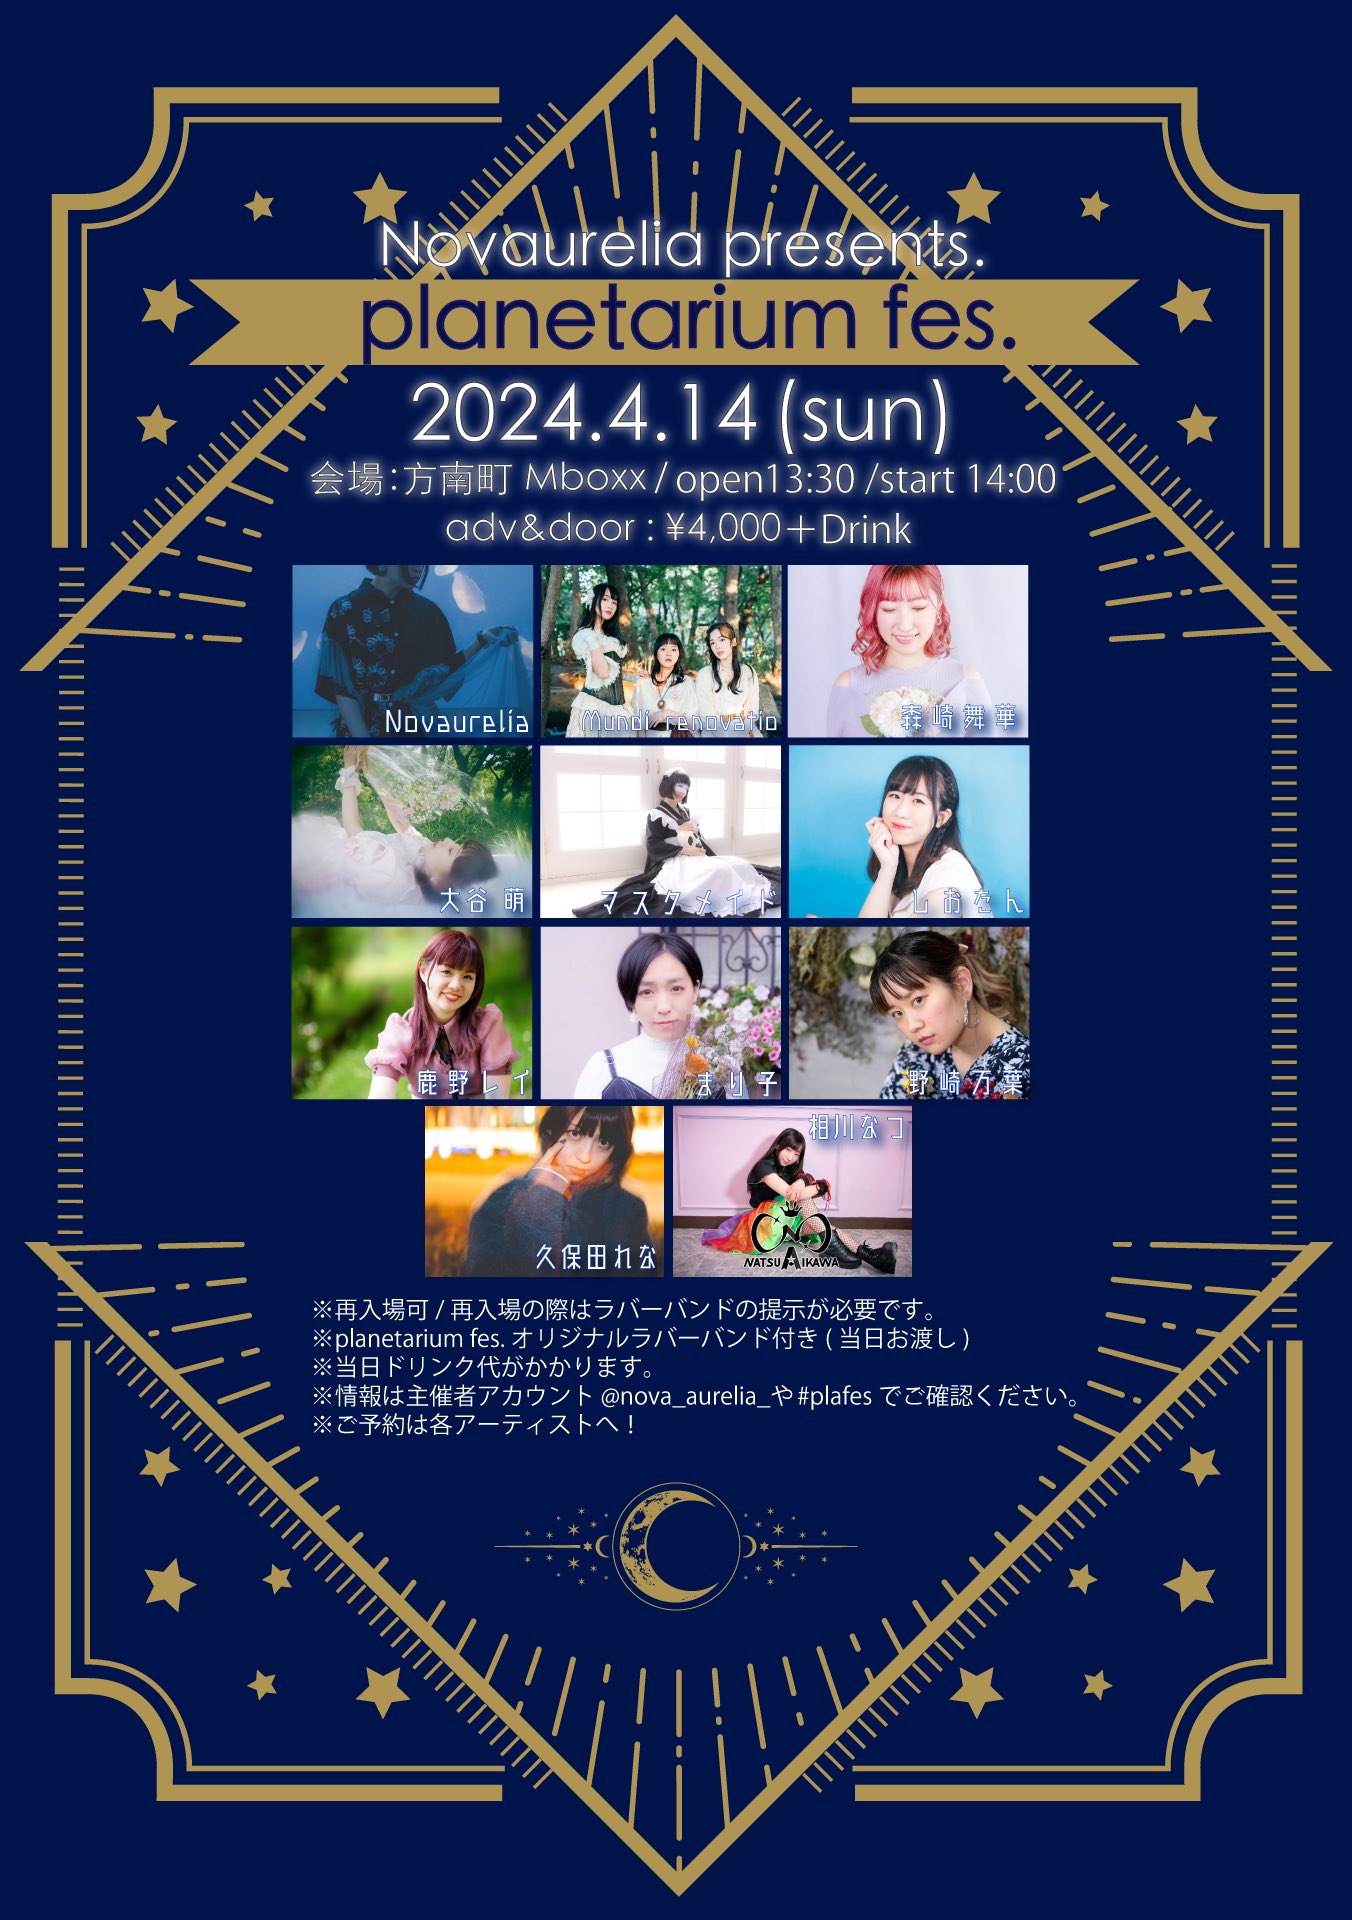 4月14日(日) Novaurelia presents. 「planetarium fes.」に出演します!!!